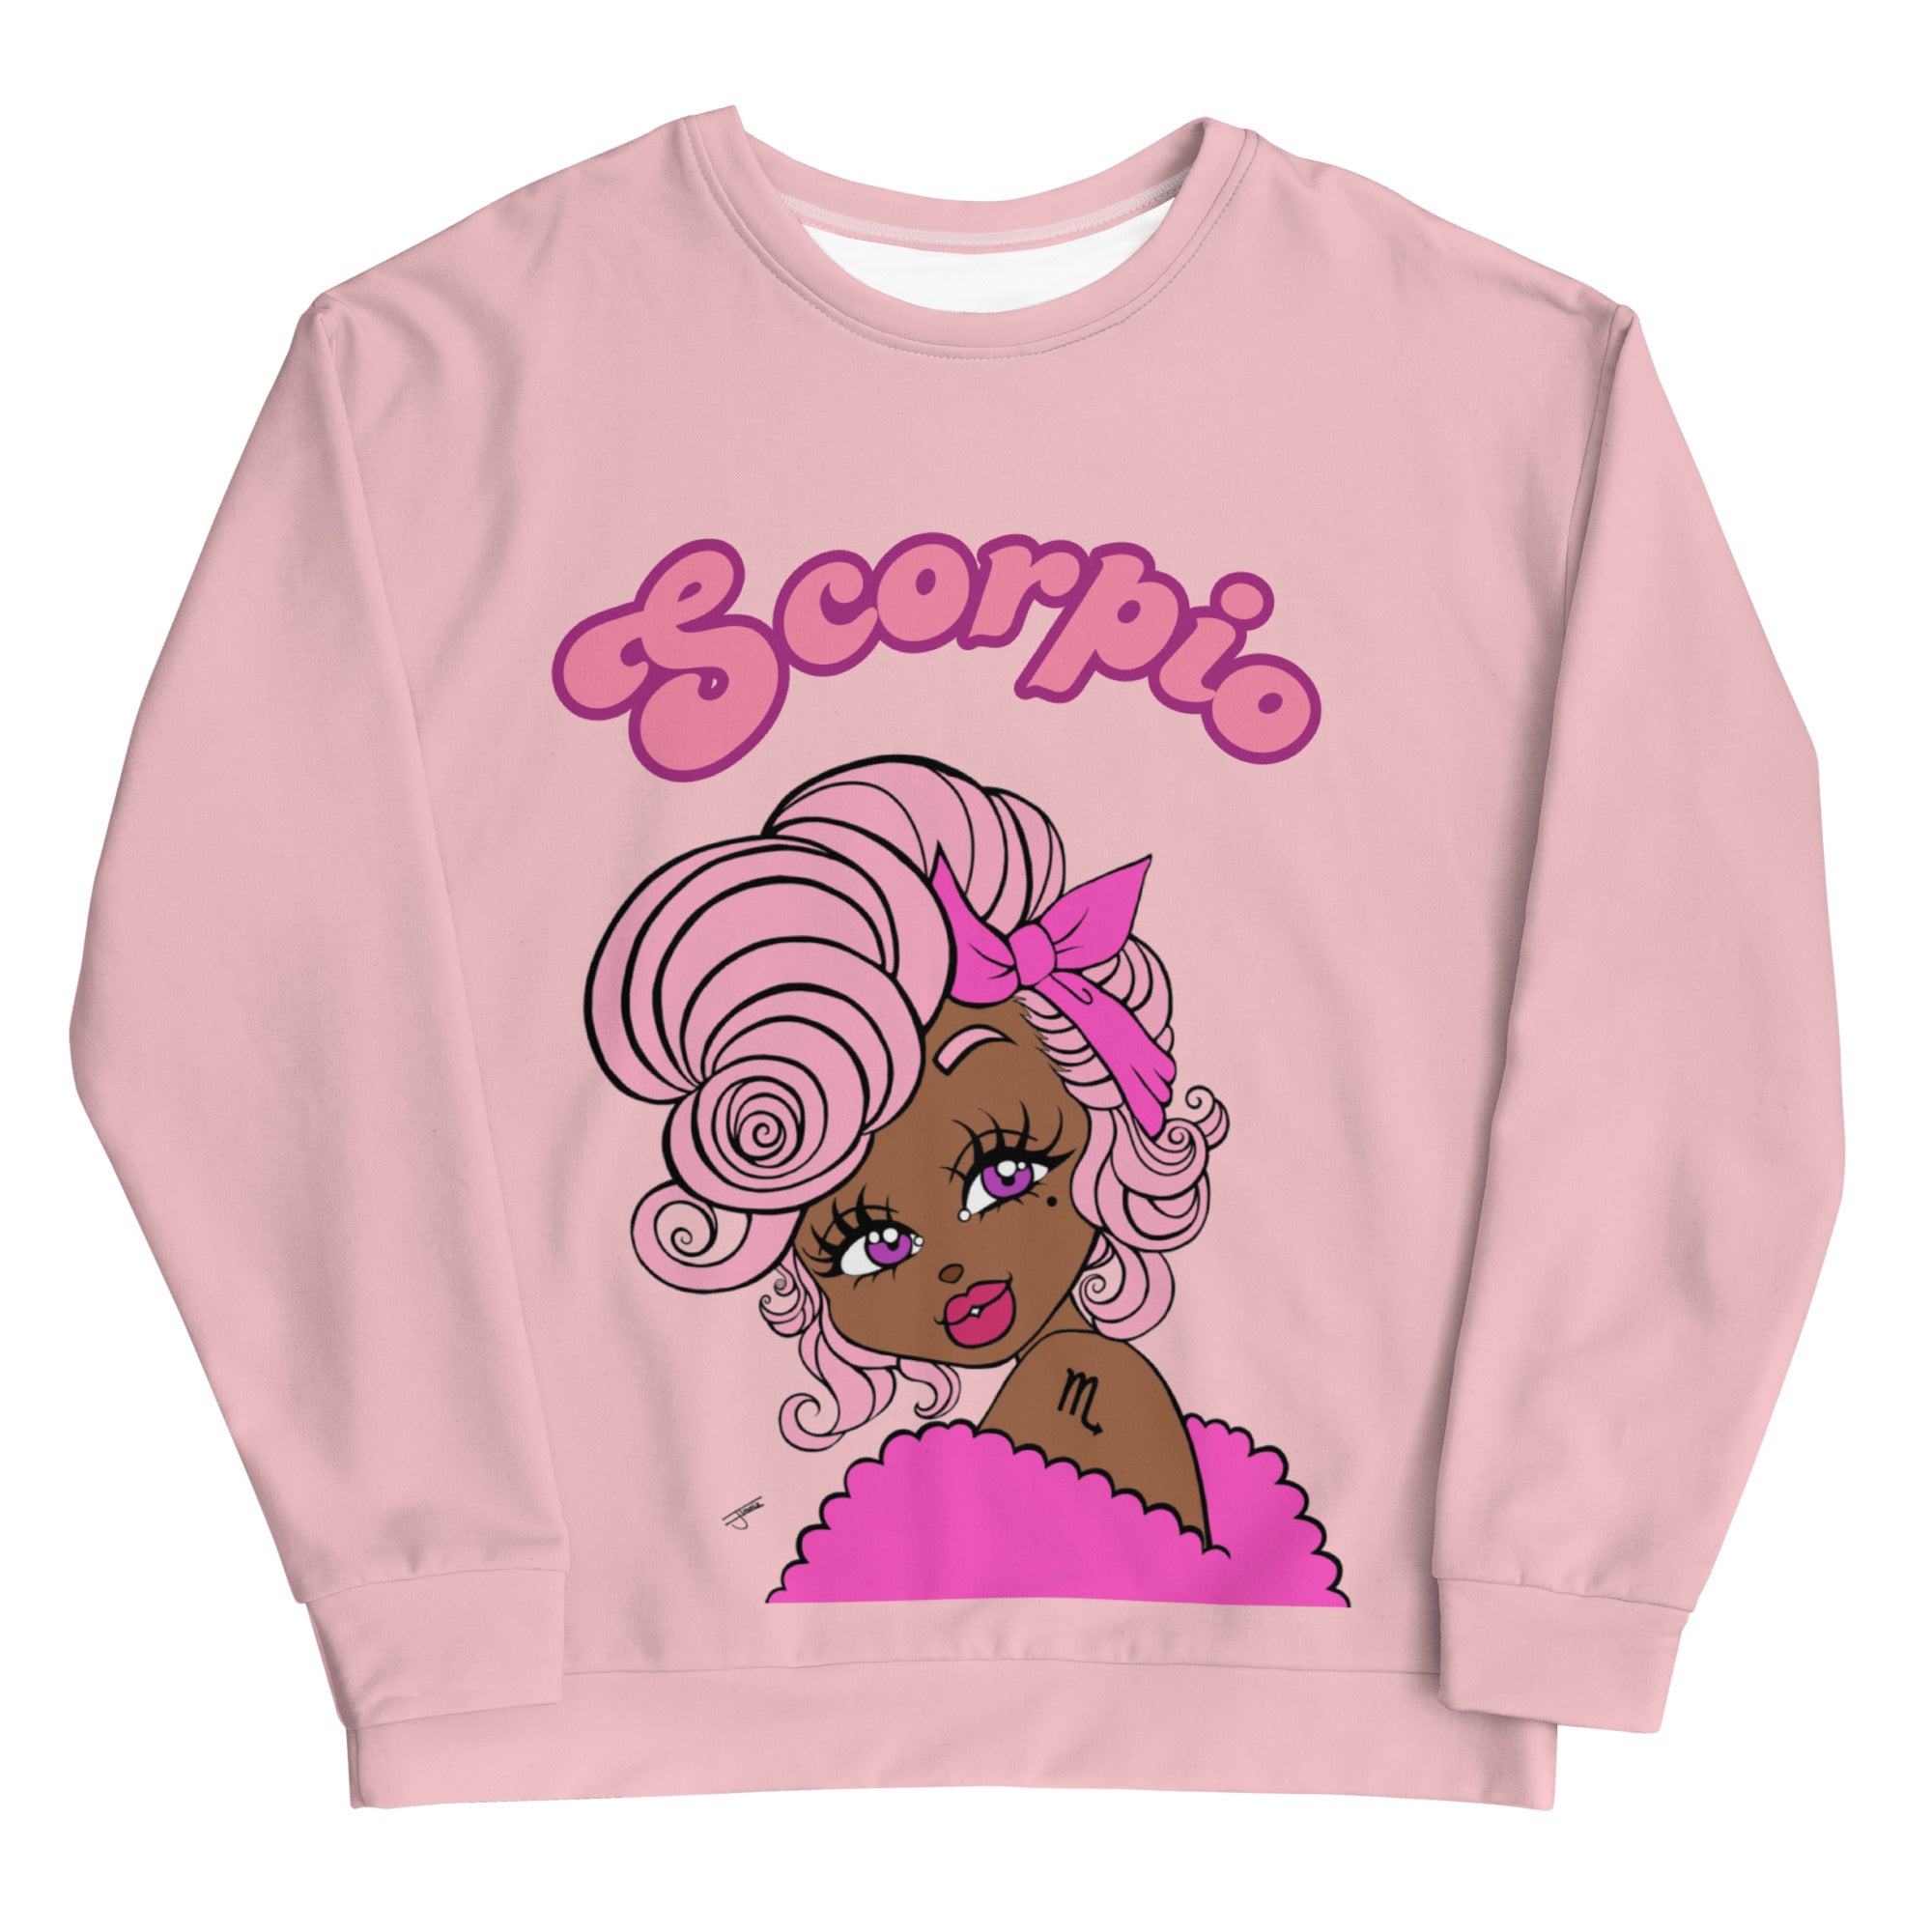 Miss Scorpio Pink Sweatshirt